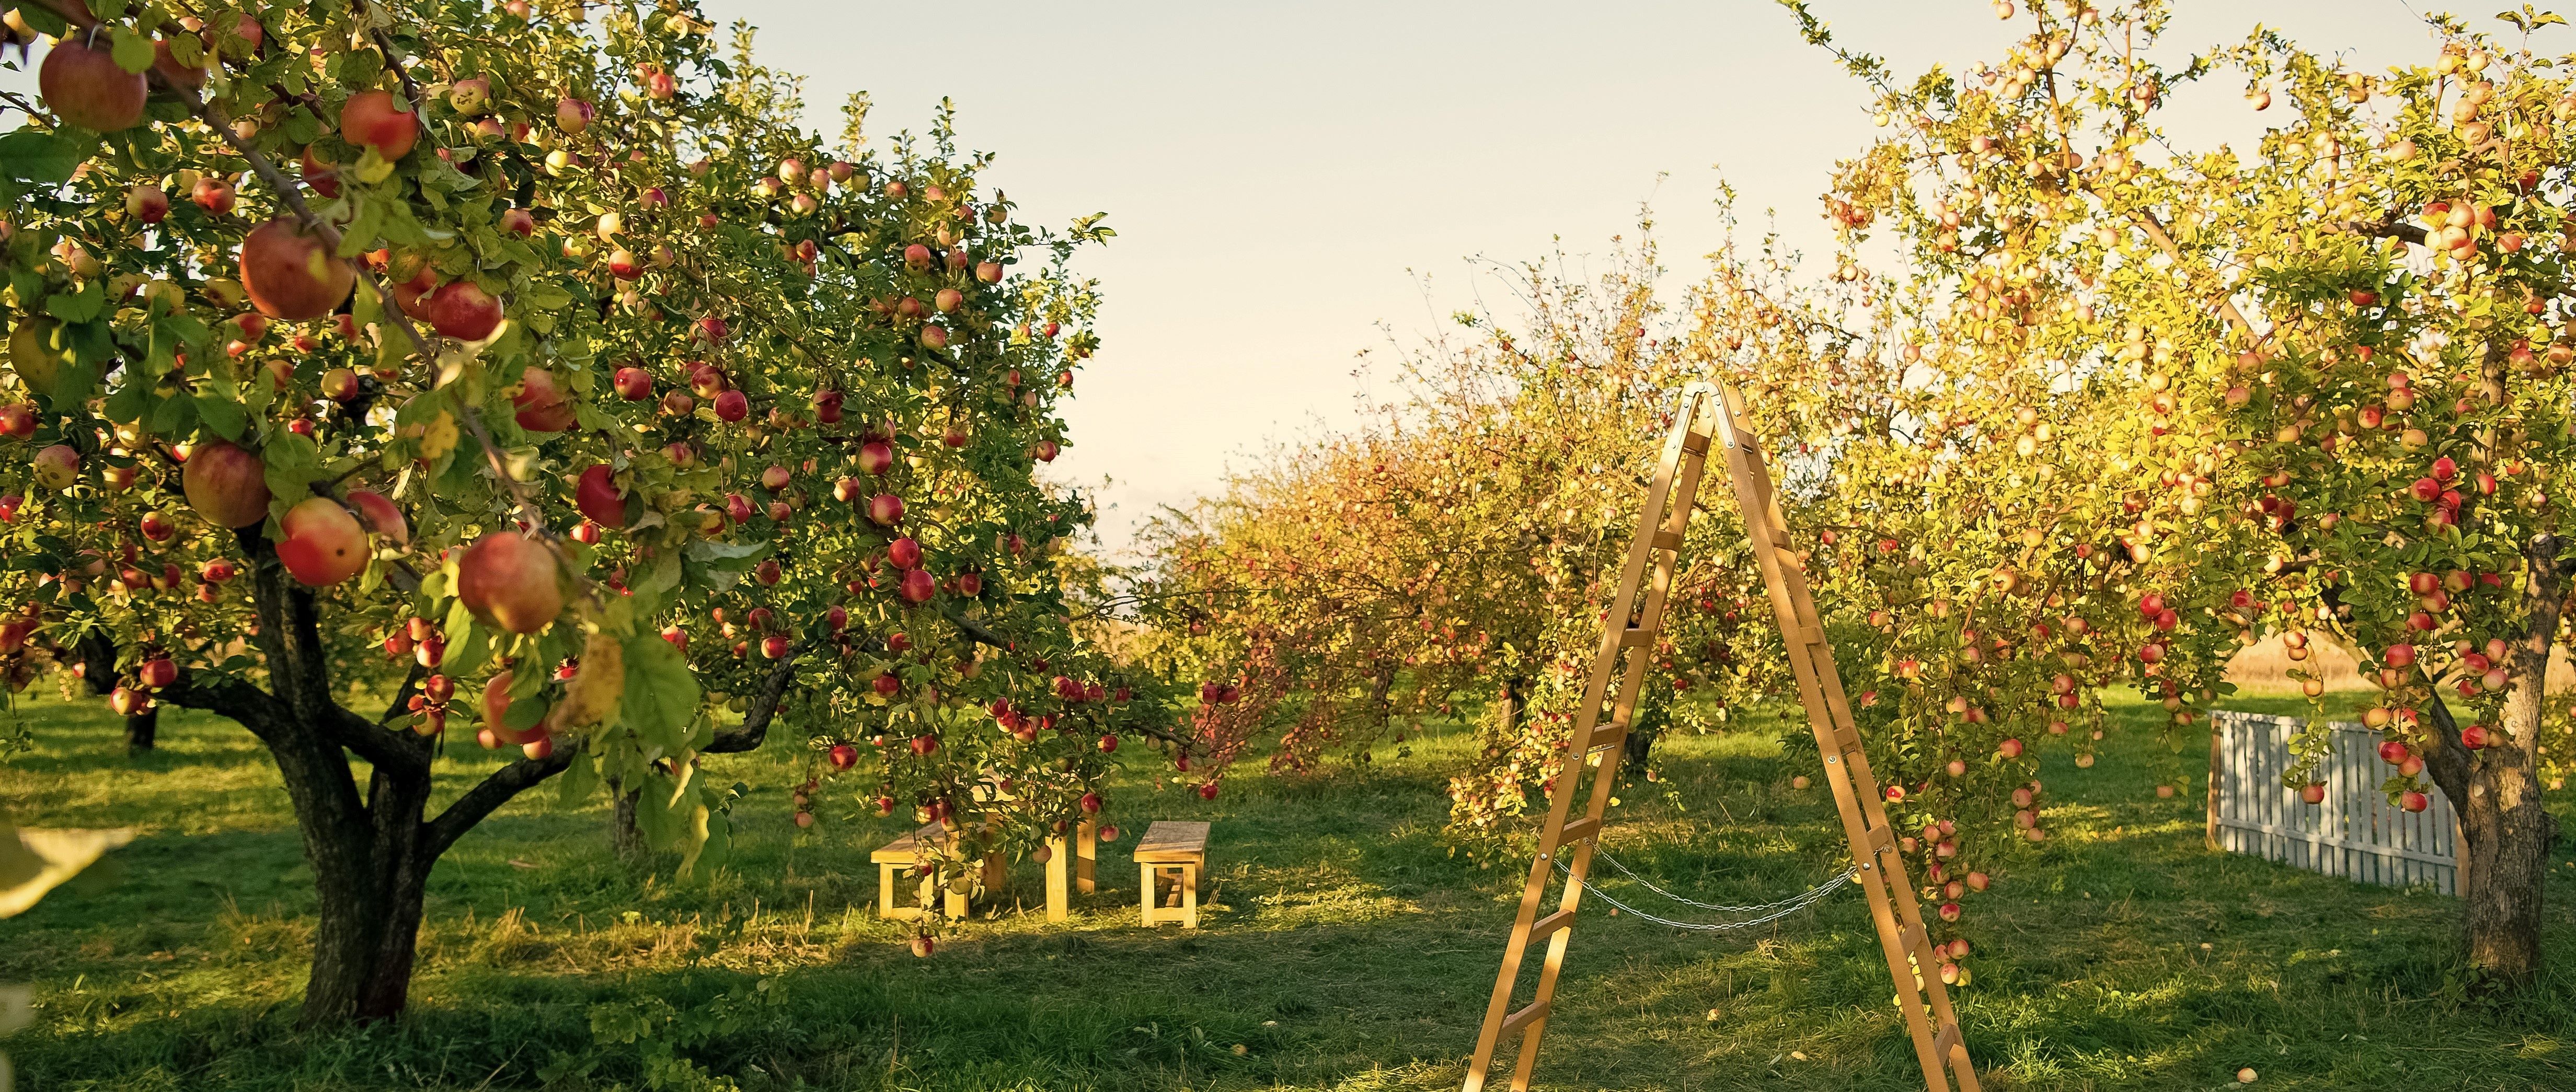 Nehéz éveken vannak túl a magyar almatermesztők is